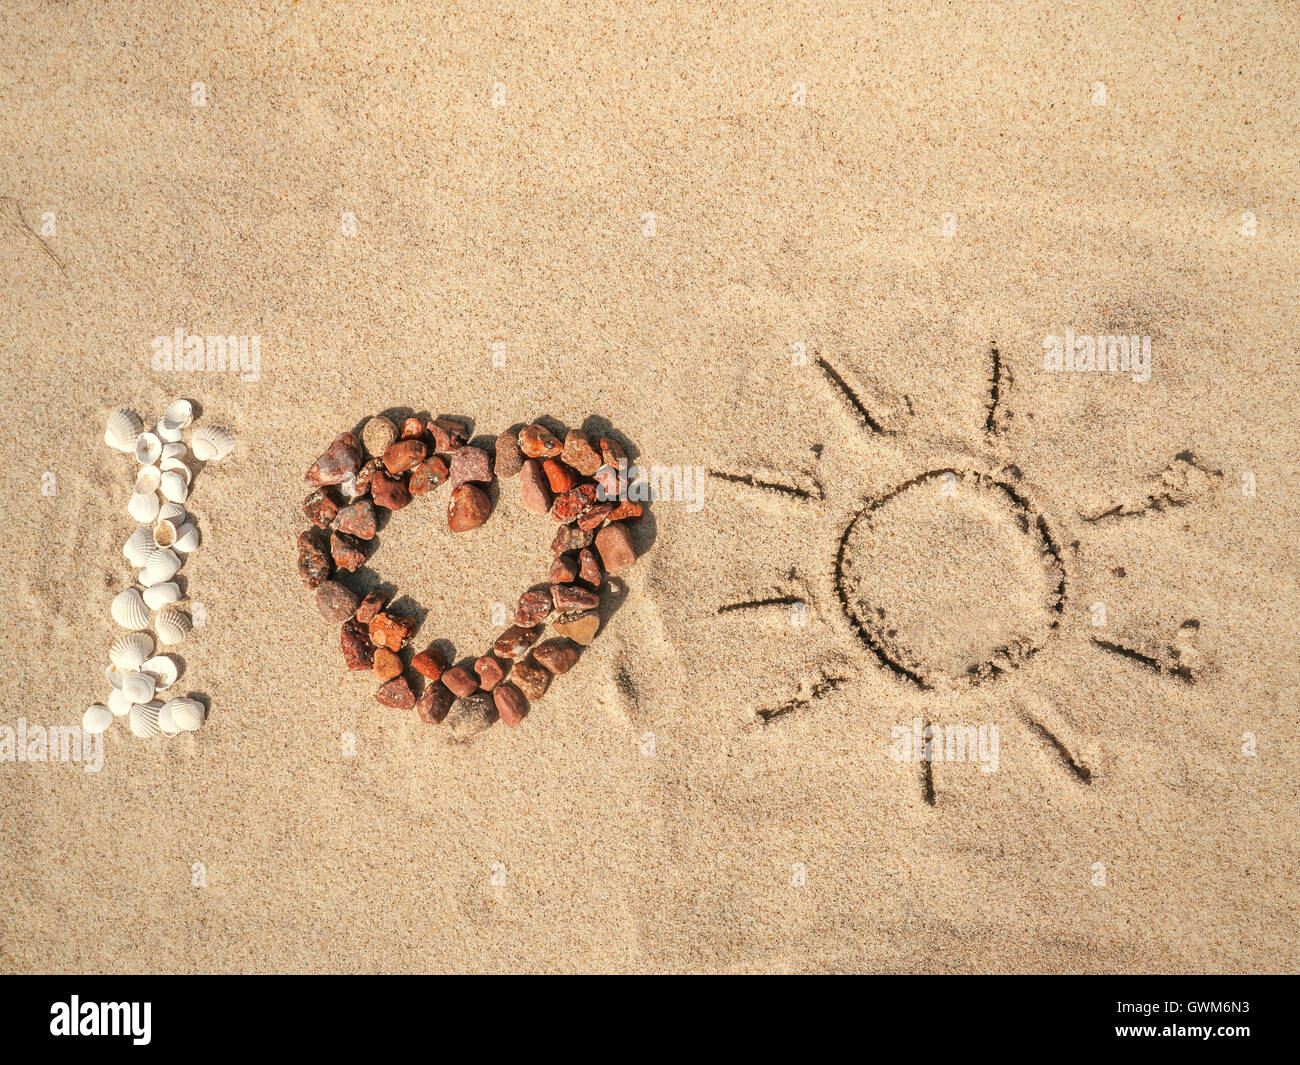 Photo de conceptuel J'aime bien que l'acronyme organisé à partir de coquillages, de cailloux et de rouge à la main sur le sable de la plage du soleil Banque D'Images